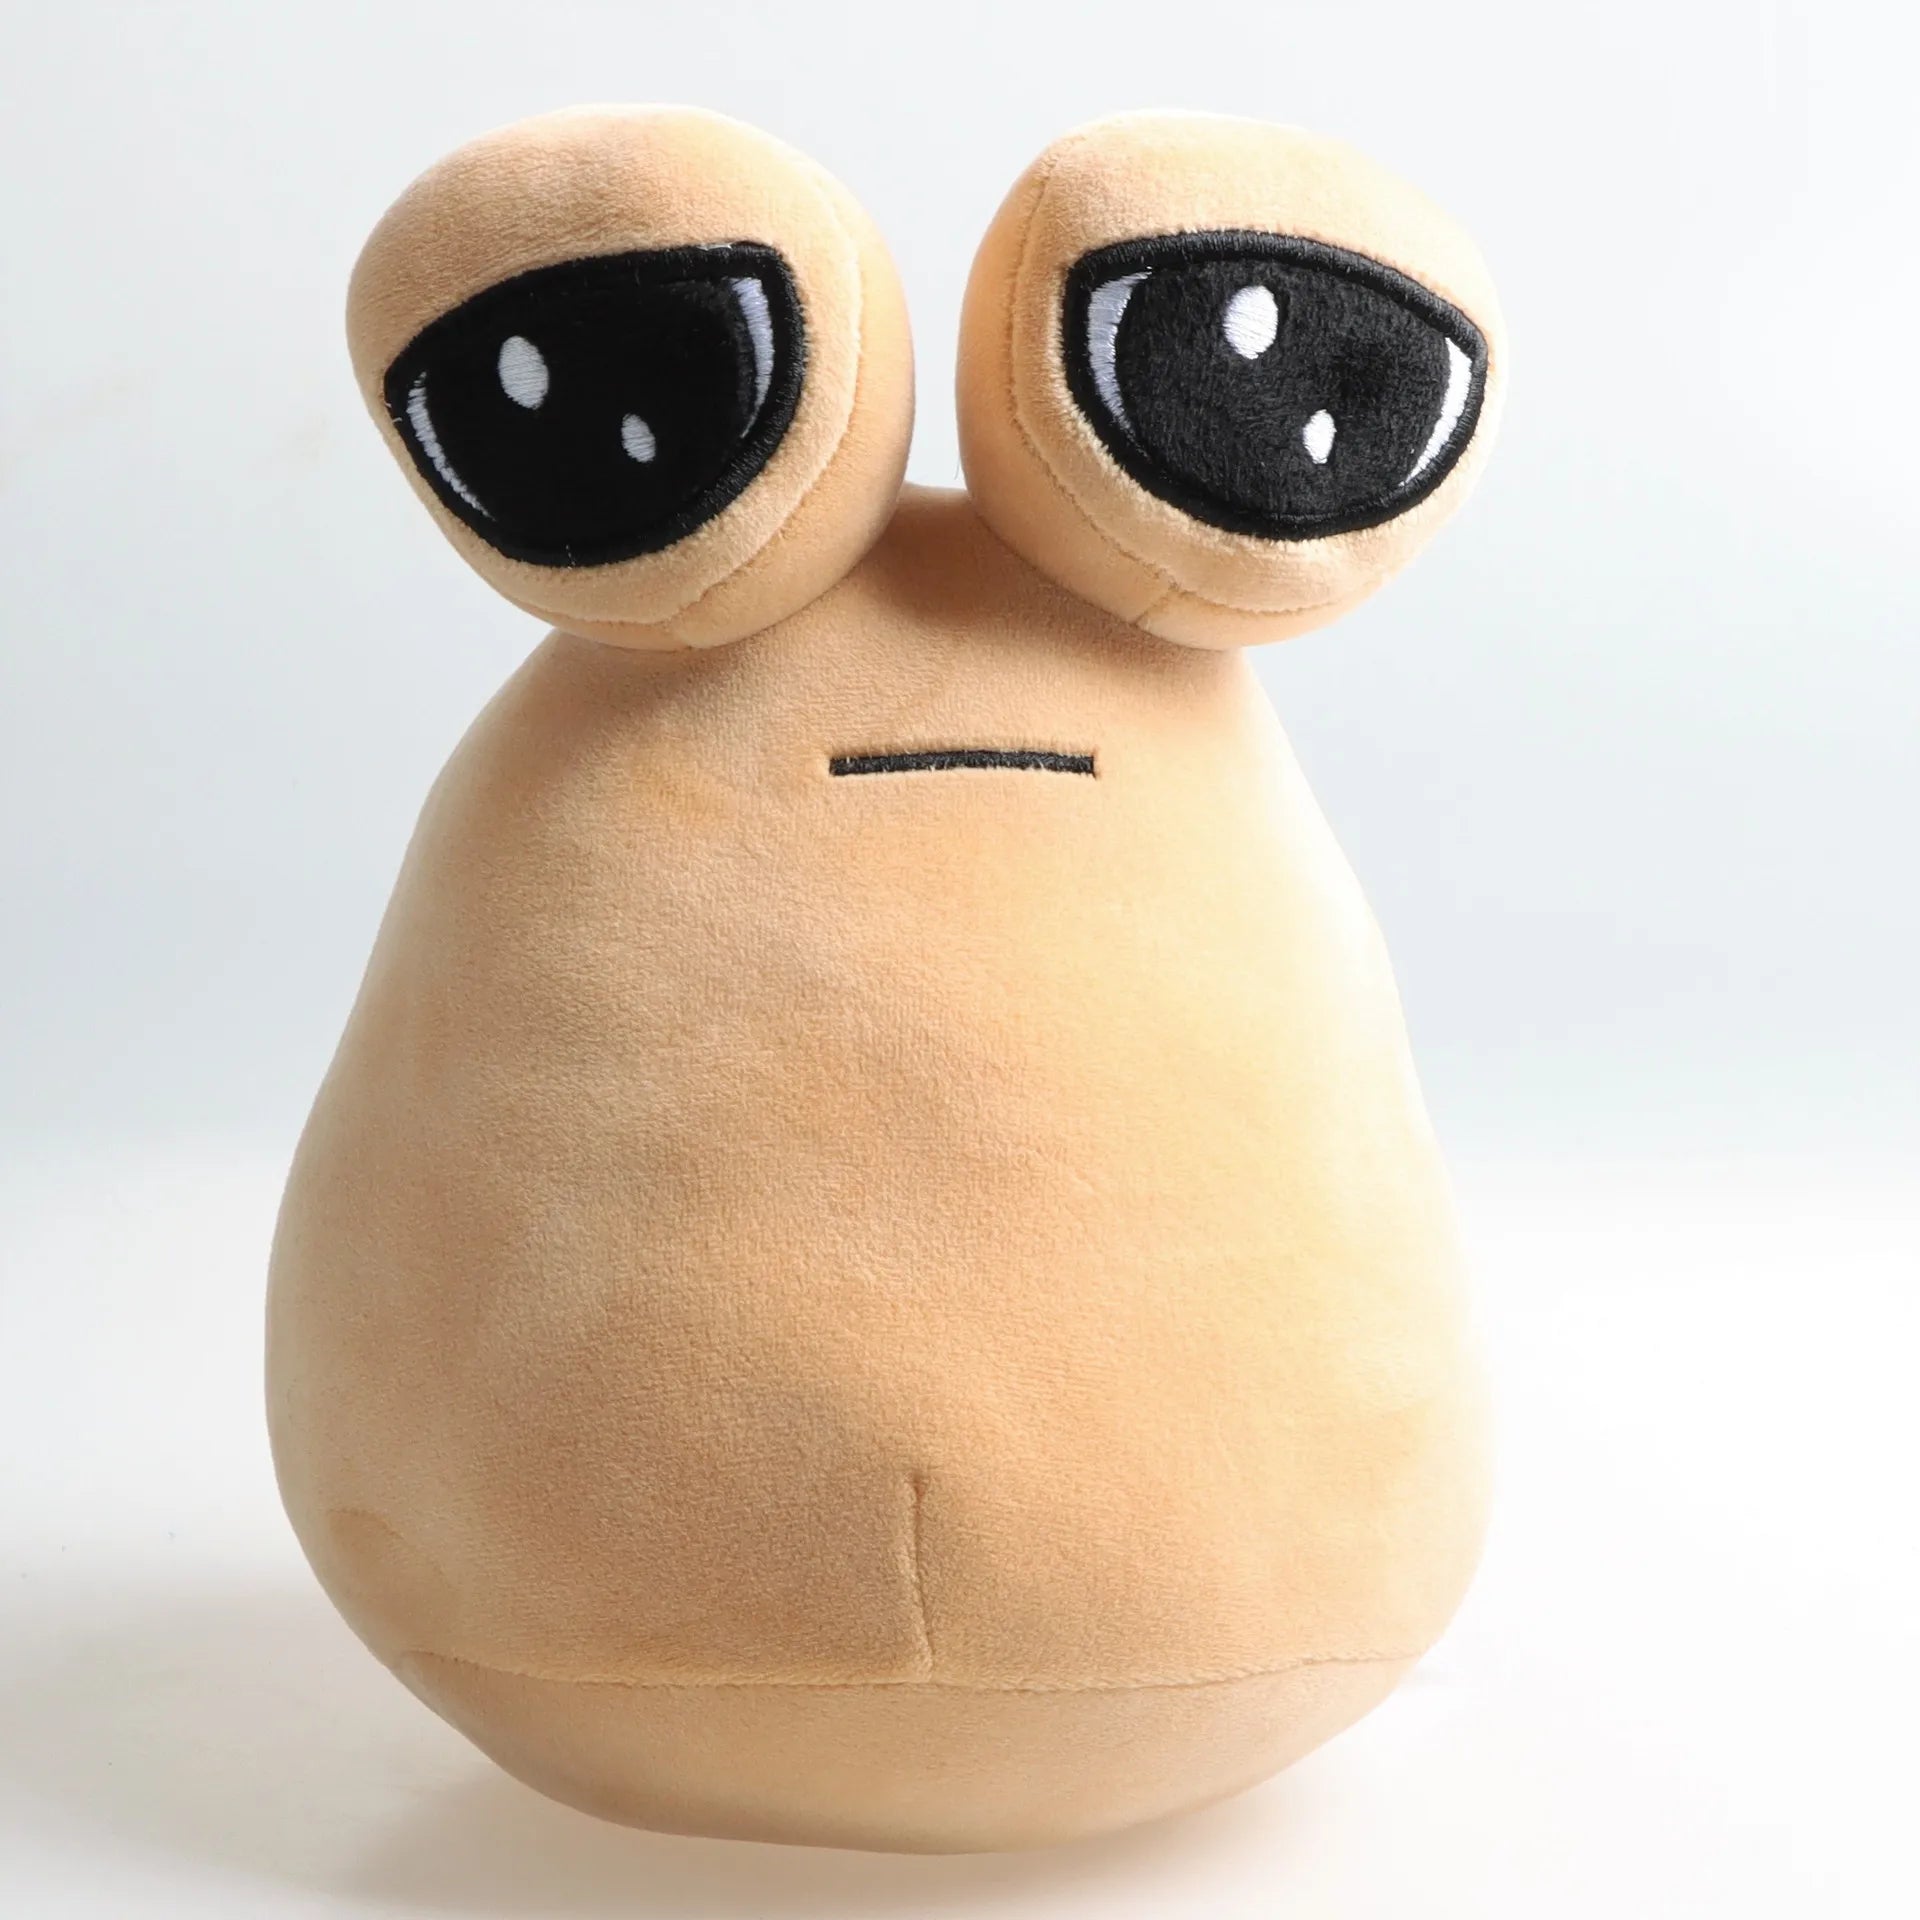 My Pet Alien Pou Plush Toy: Soft, Movie-inspired, CE Certified, Unisex Alien Plush  petlums.com   